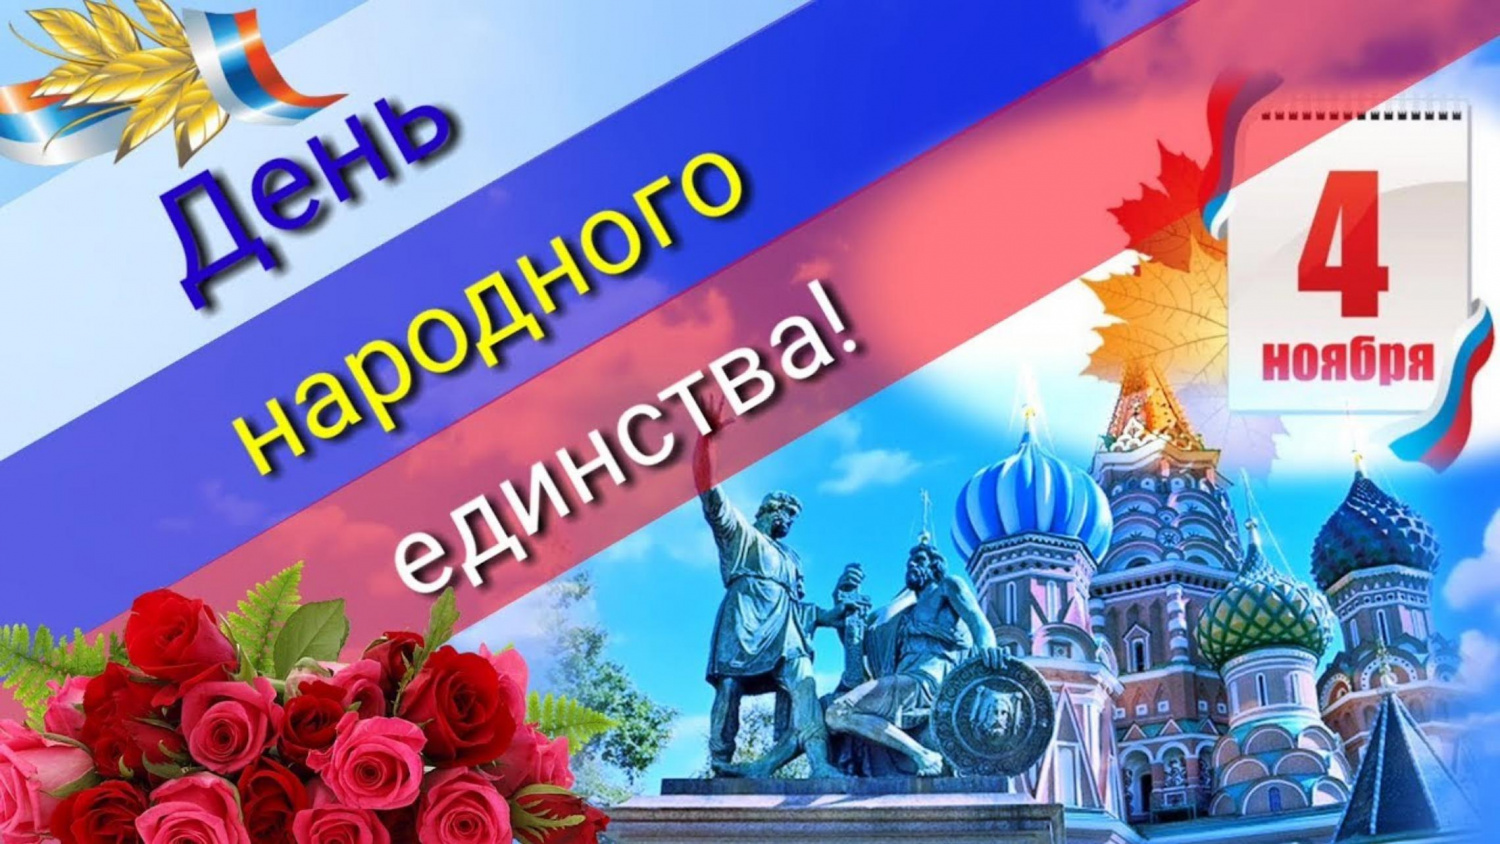 Руководители Владимирской области поздравляют жителей области с Днём народного единства России!